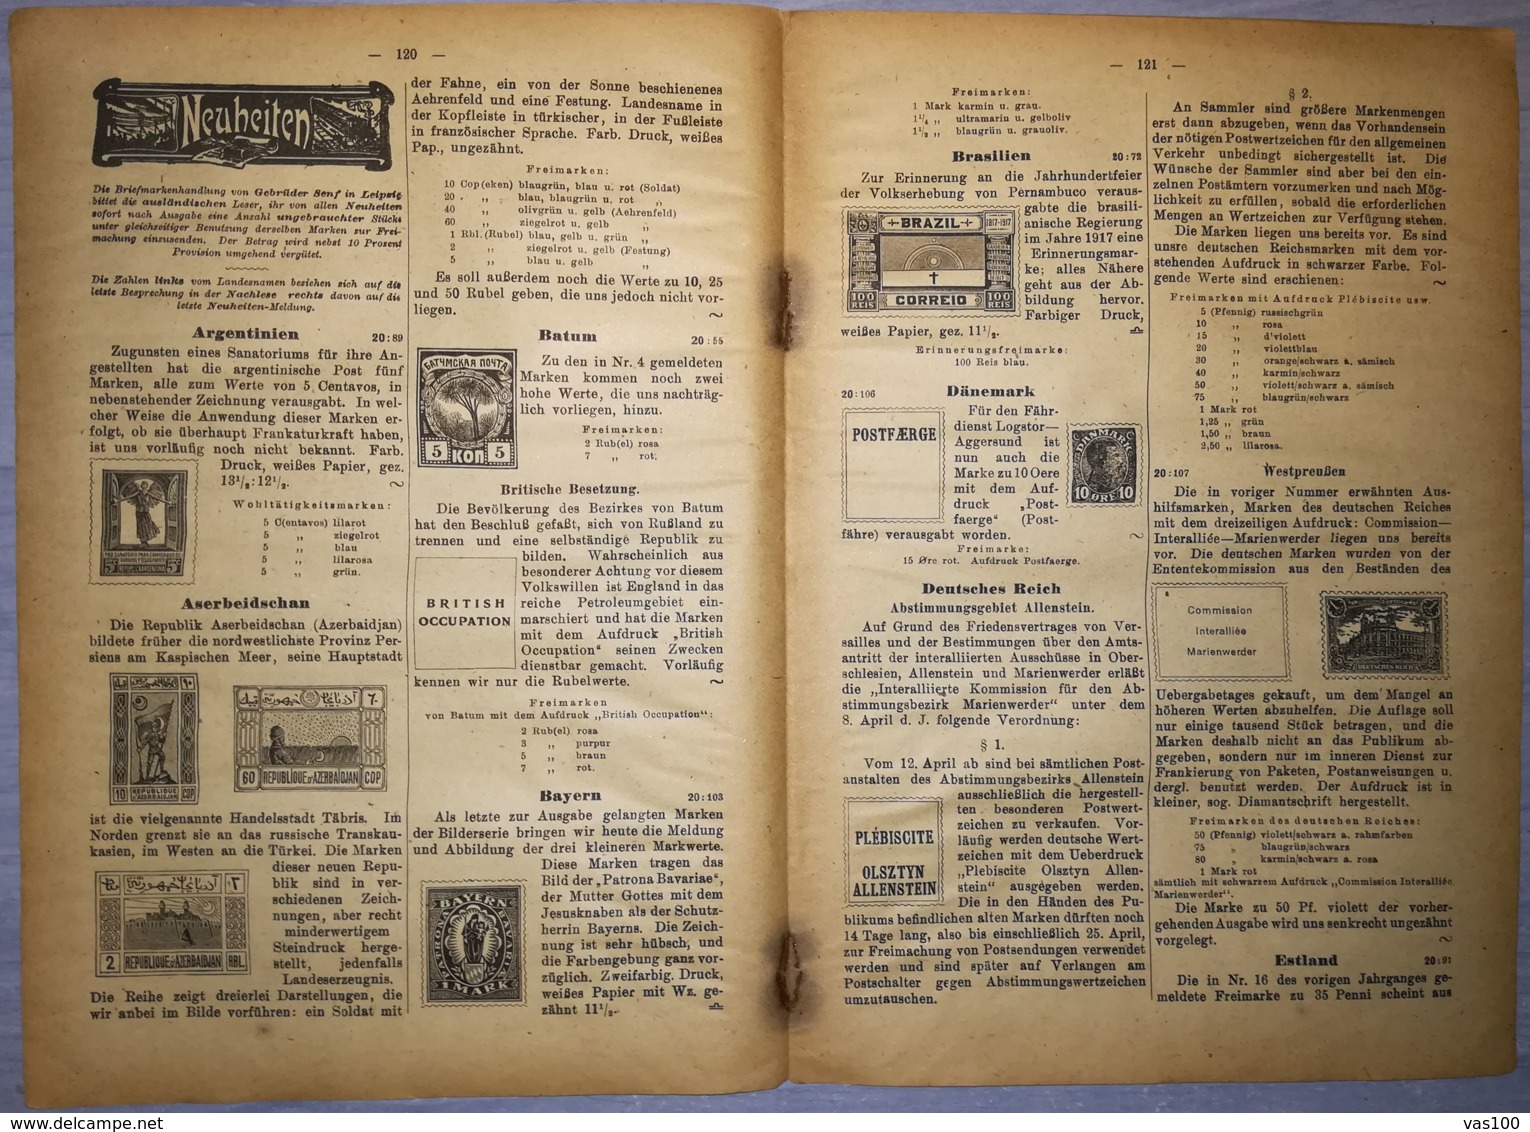 ILLUSTRATED STAMPS JOURNAL- ILLUSTRIERTES BRIEFMARKEN JOURNAL MAGAZINE, LEIPZIG, NR 8, MAY 1920, GERMANY - Tedesche (prima Del 1940)